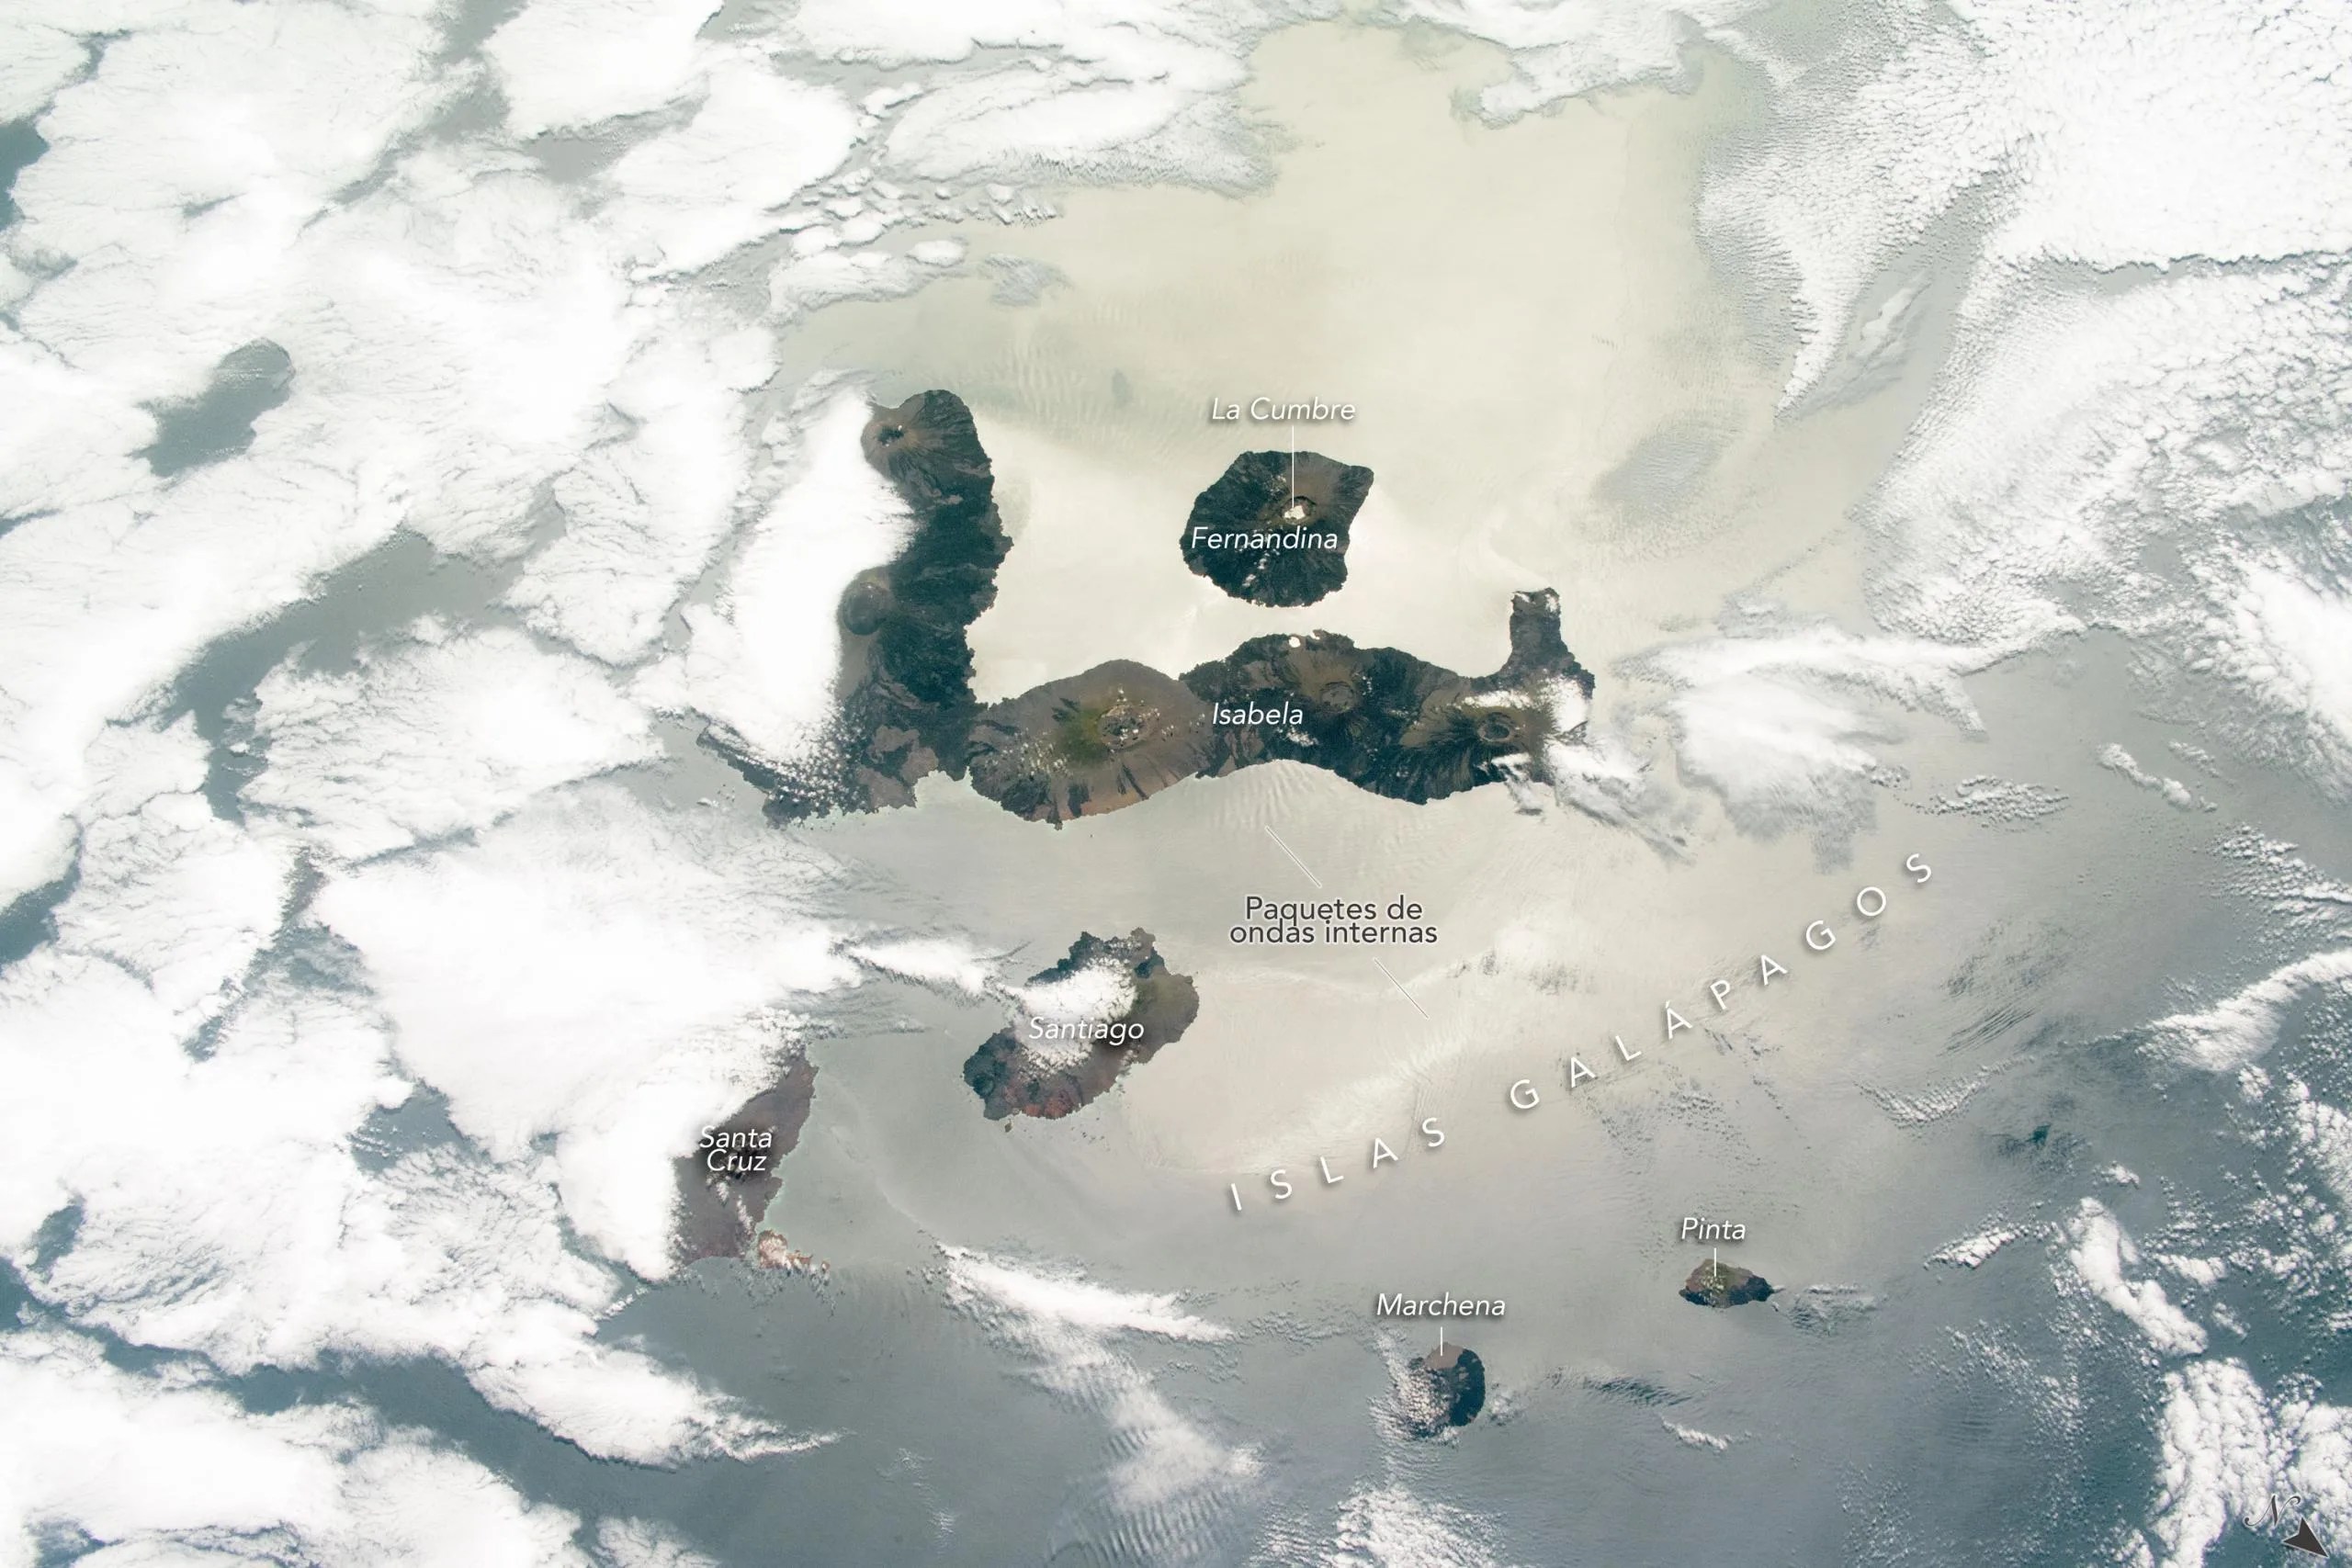 Esta fotografía, tomada el 24 de octubre de 2020 por un astronauta de la Estación Espacial Internacional, ofrece un vistazo a varias de las islas Galápagos, visibles entre las capas de nubes y acentuadas por el destello solar en la superficie del océano. Créditos: NASA/JSC